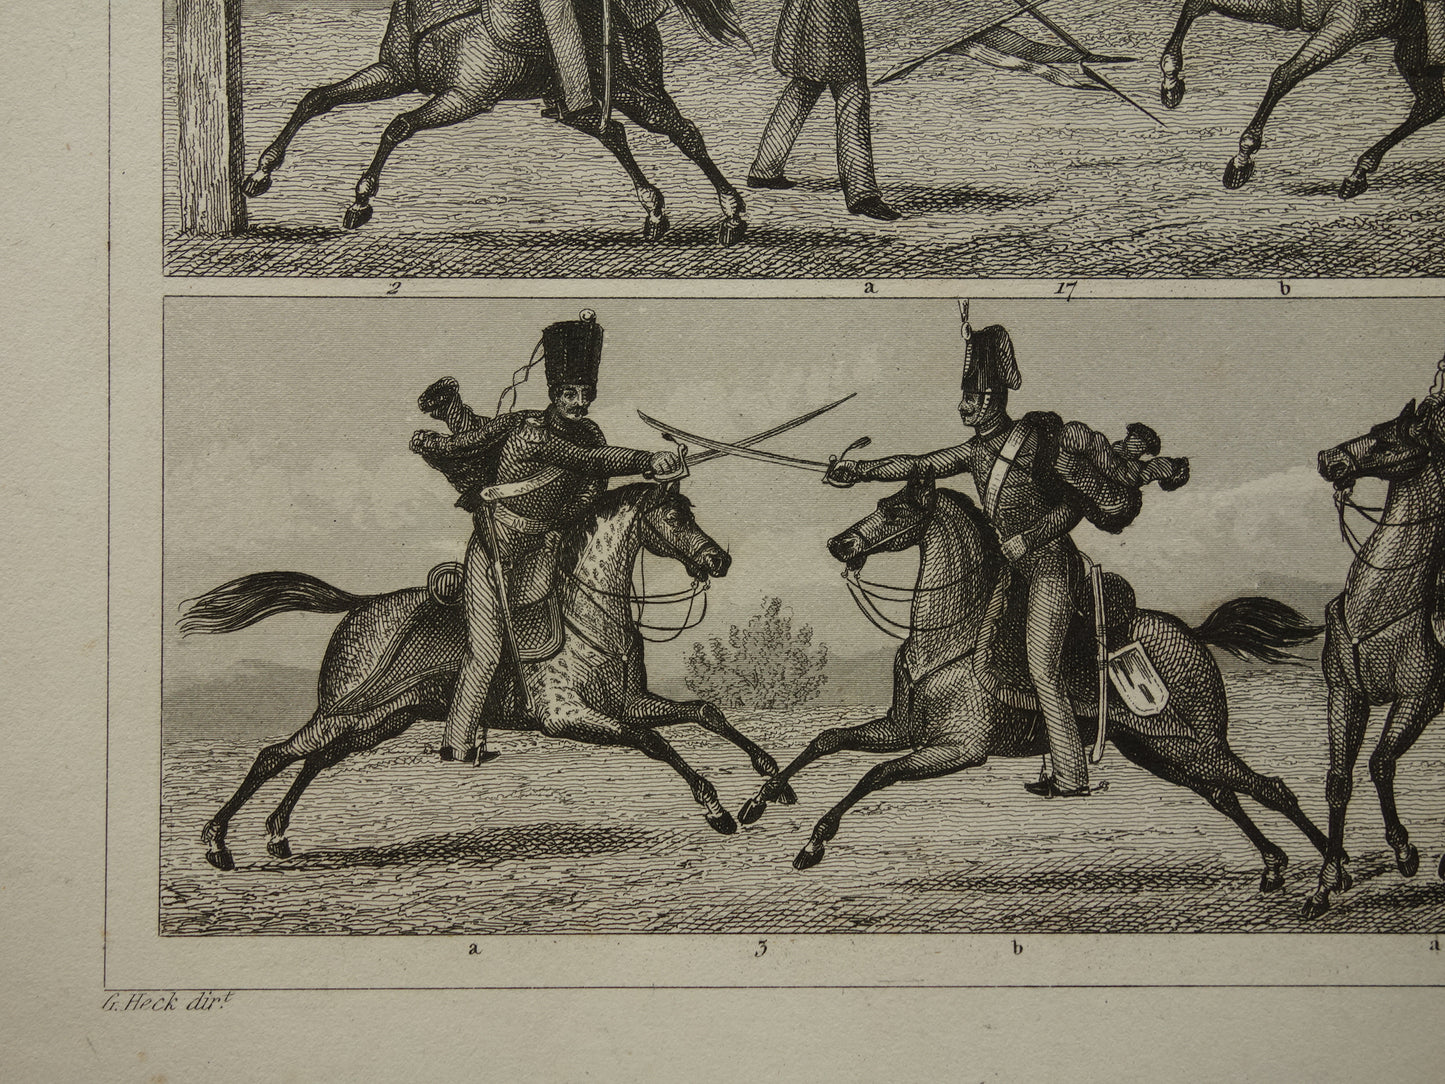 170+ jaar oude prent over infanterie en cavalerie - originele antieke militaire illustratie - leger gevechtstechniek poster print